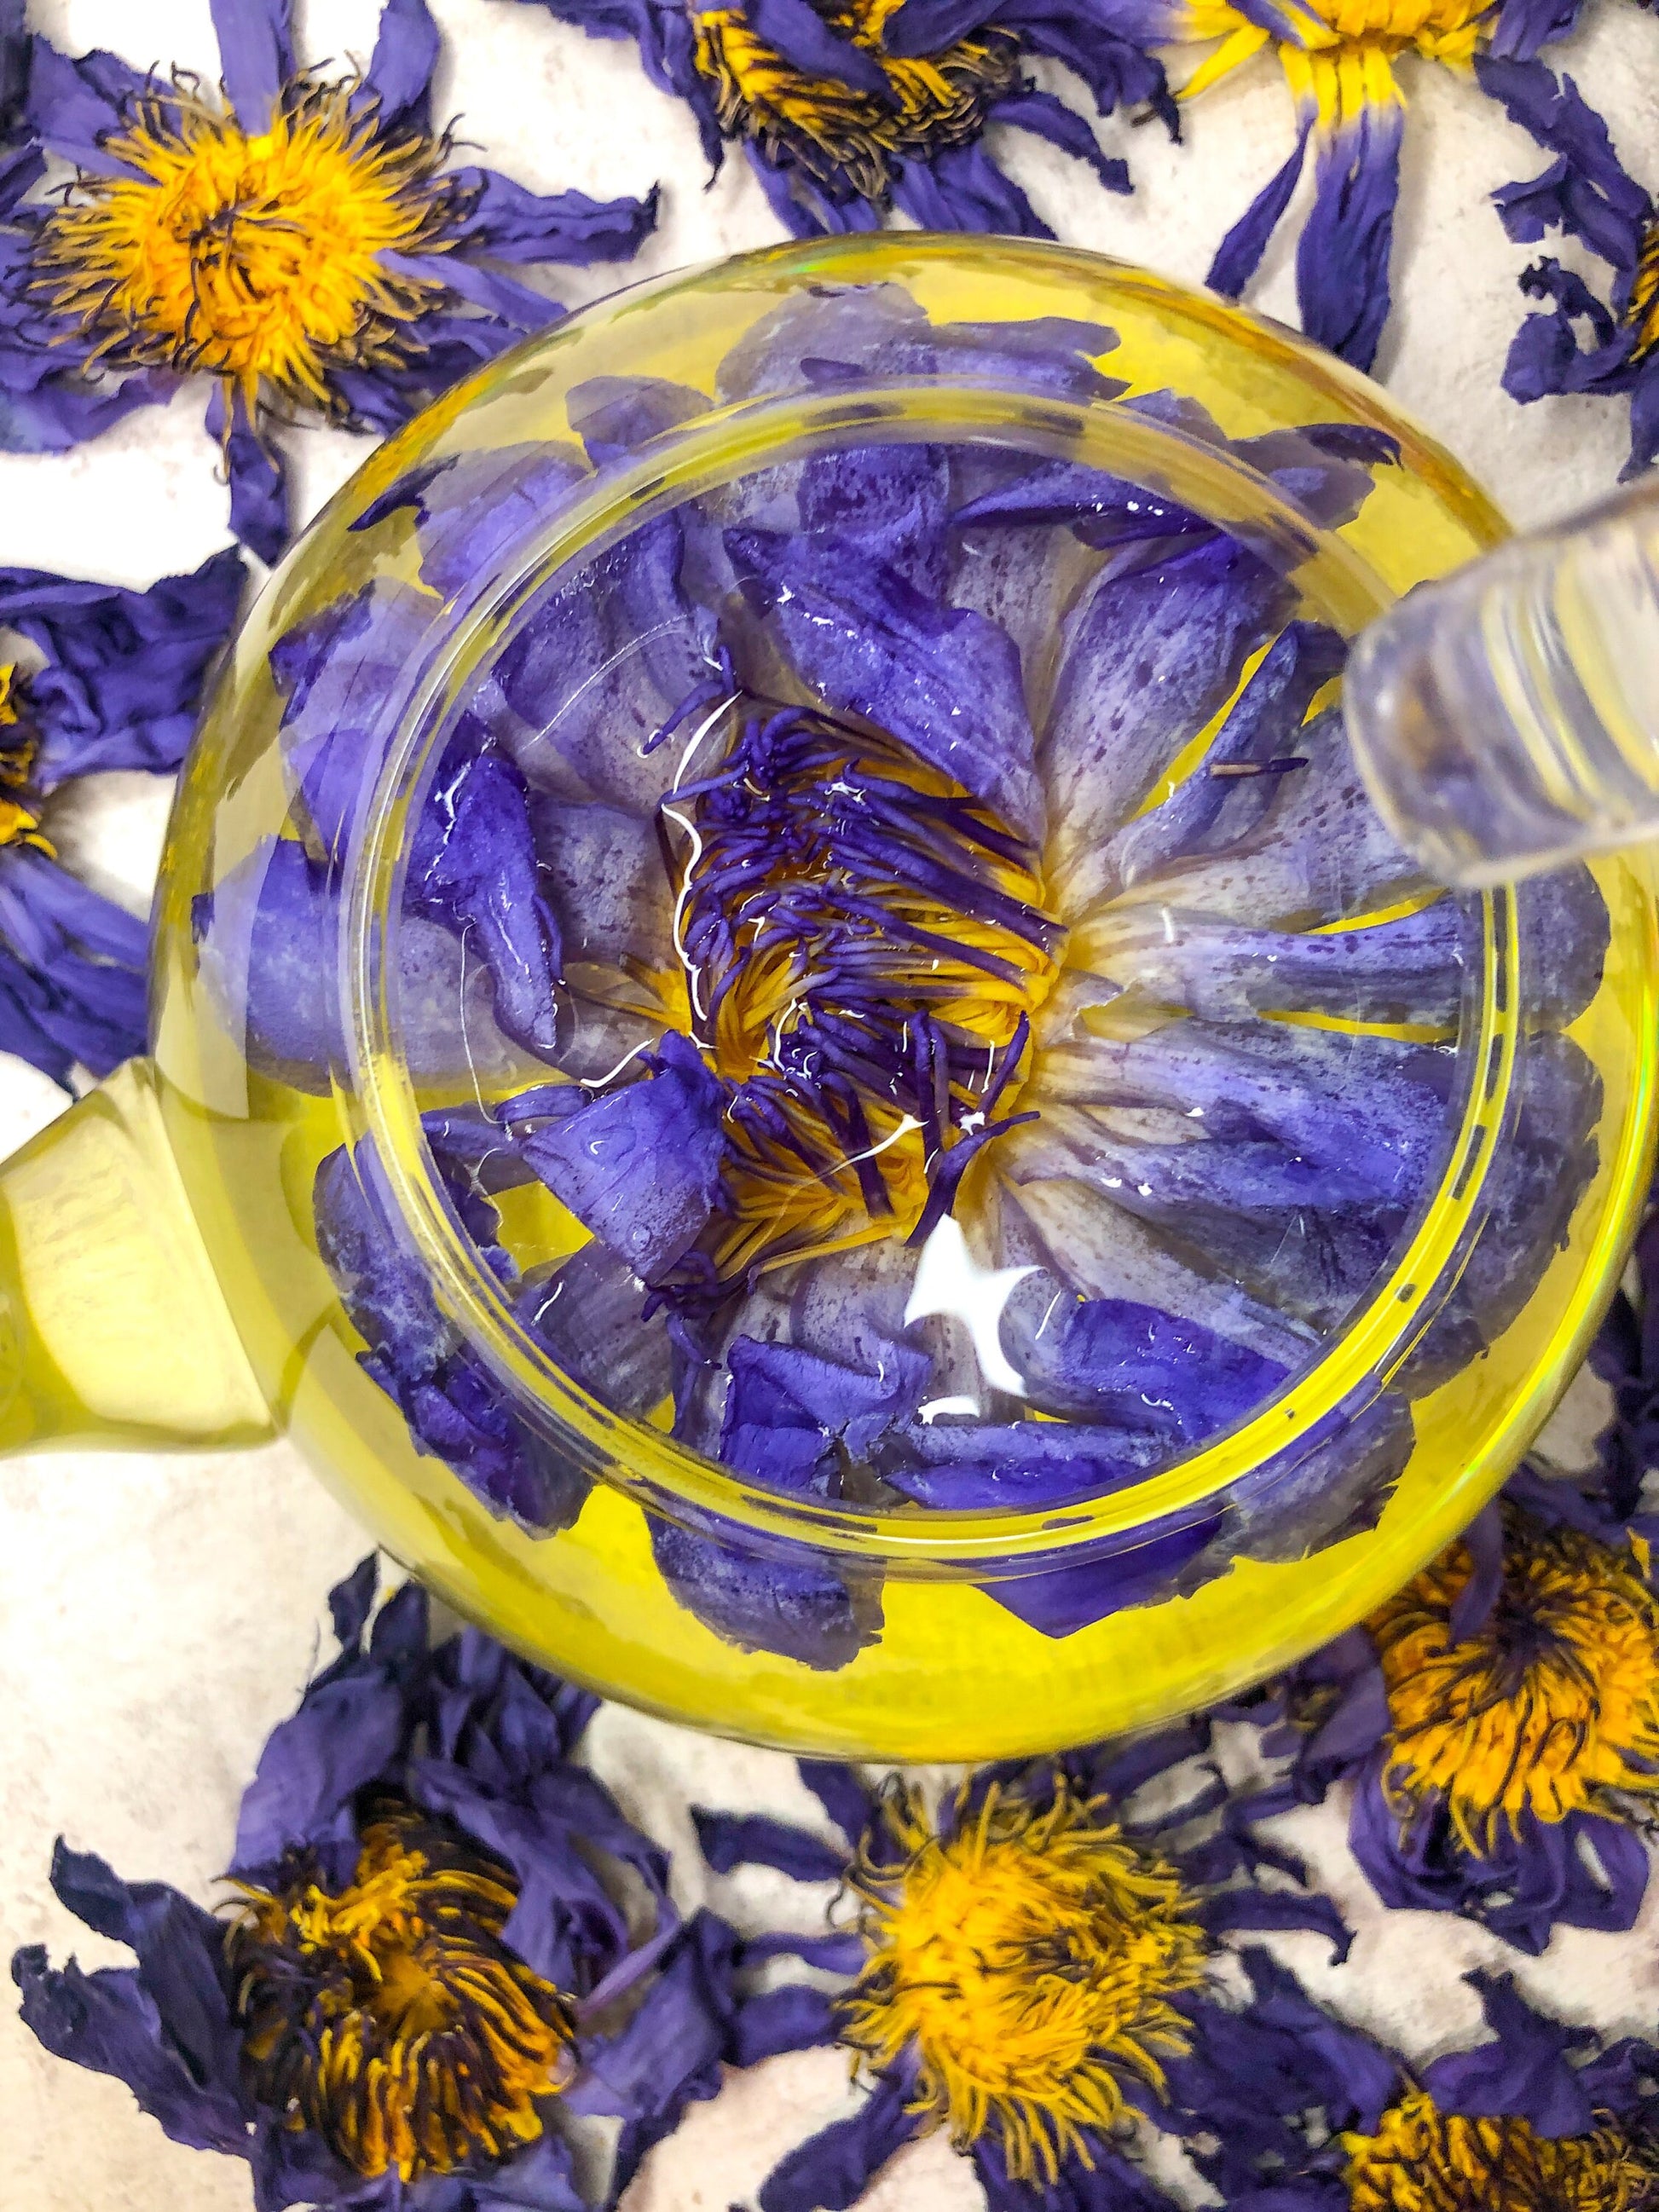 Blue Lotus for tea NEW!!! - Lotus flower tea (Nymphaea caerulea